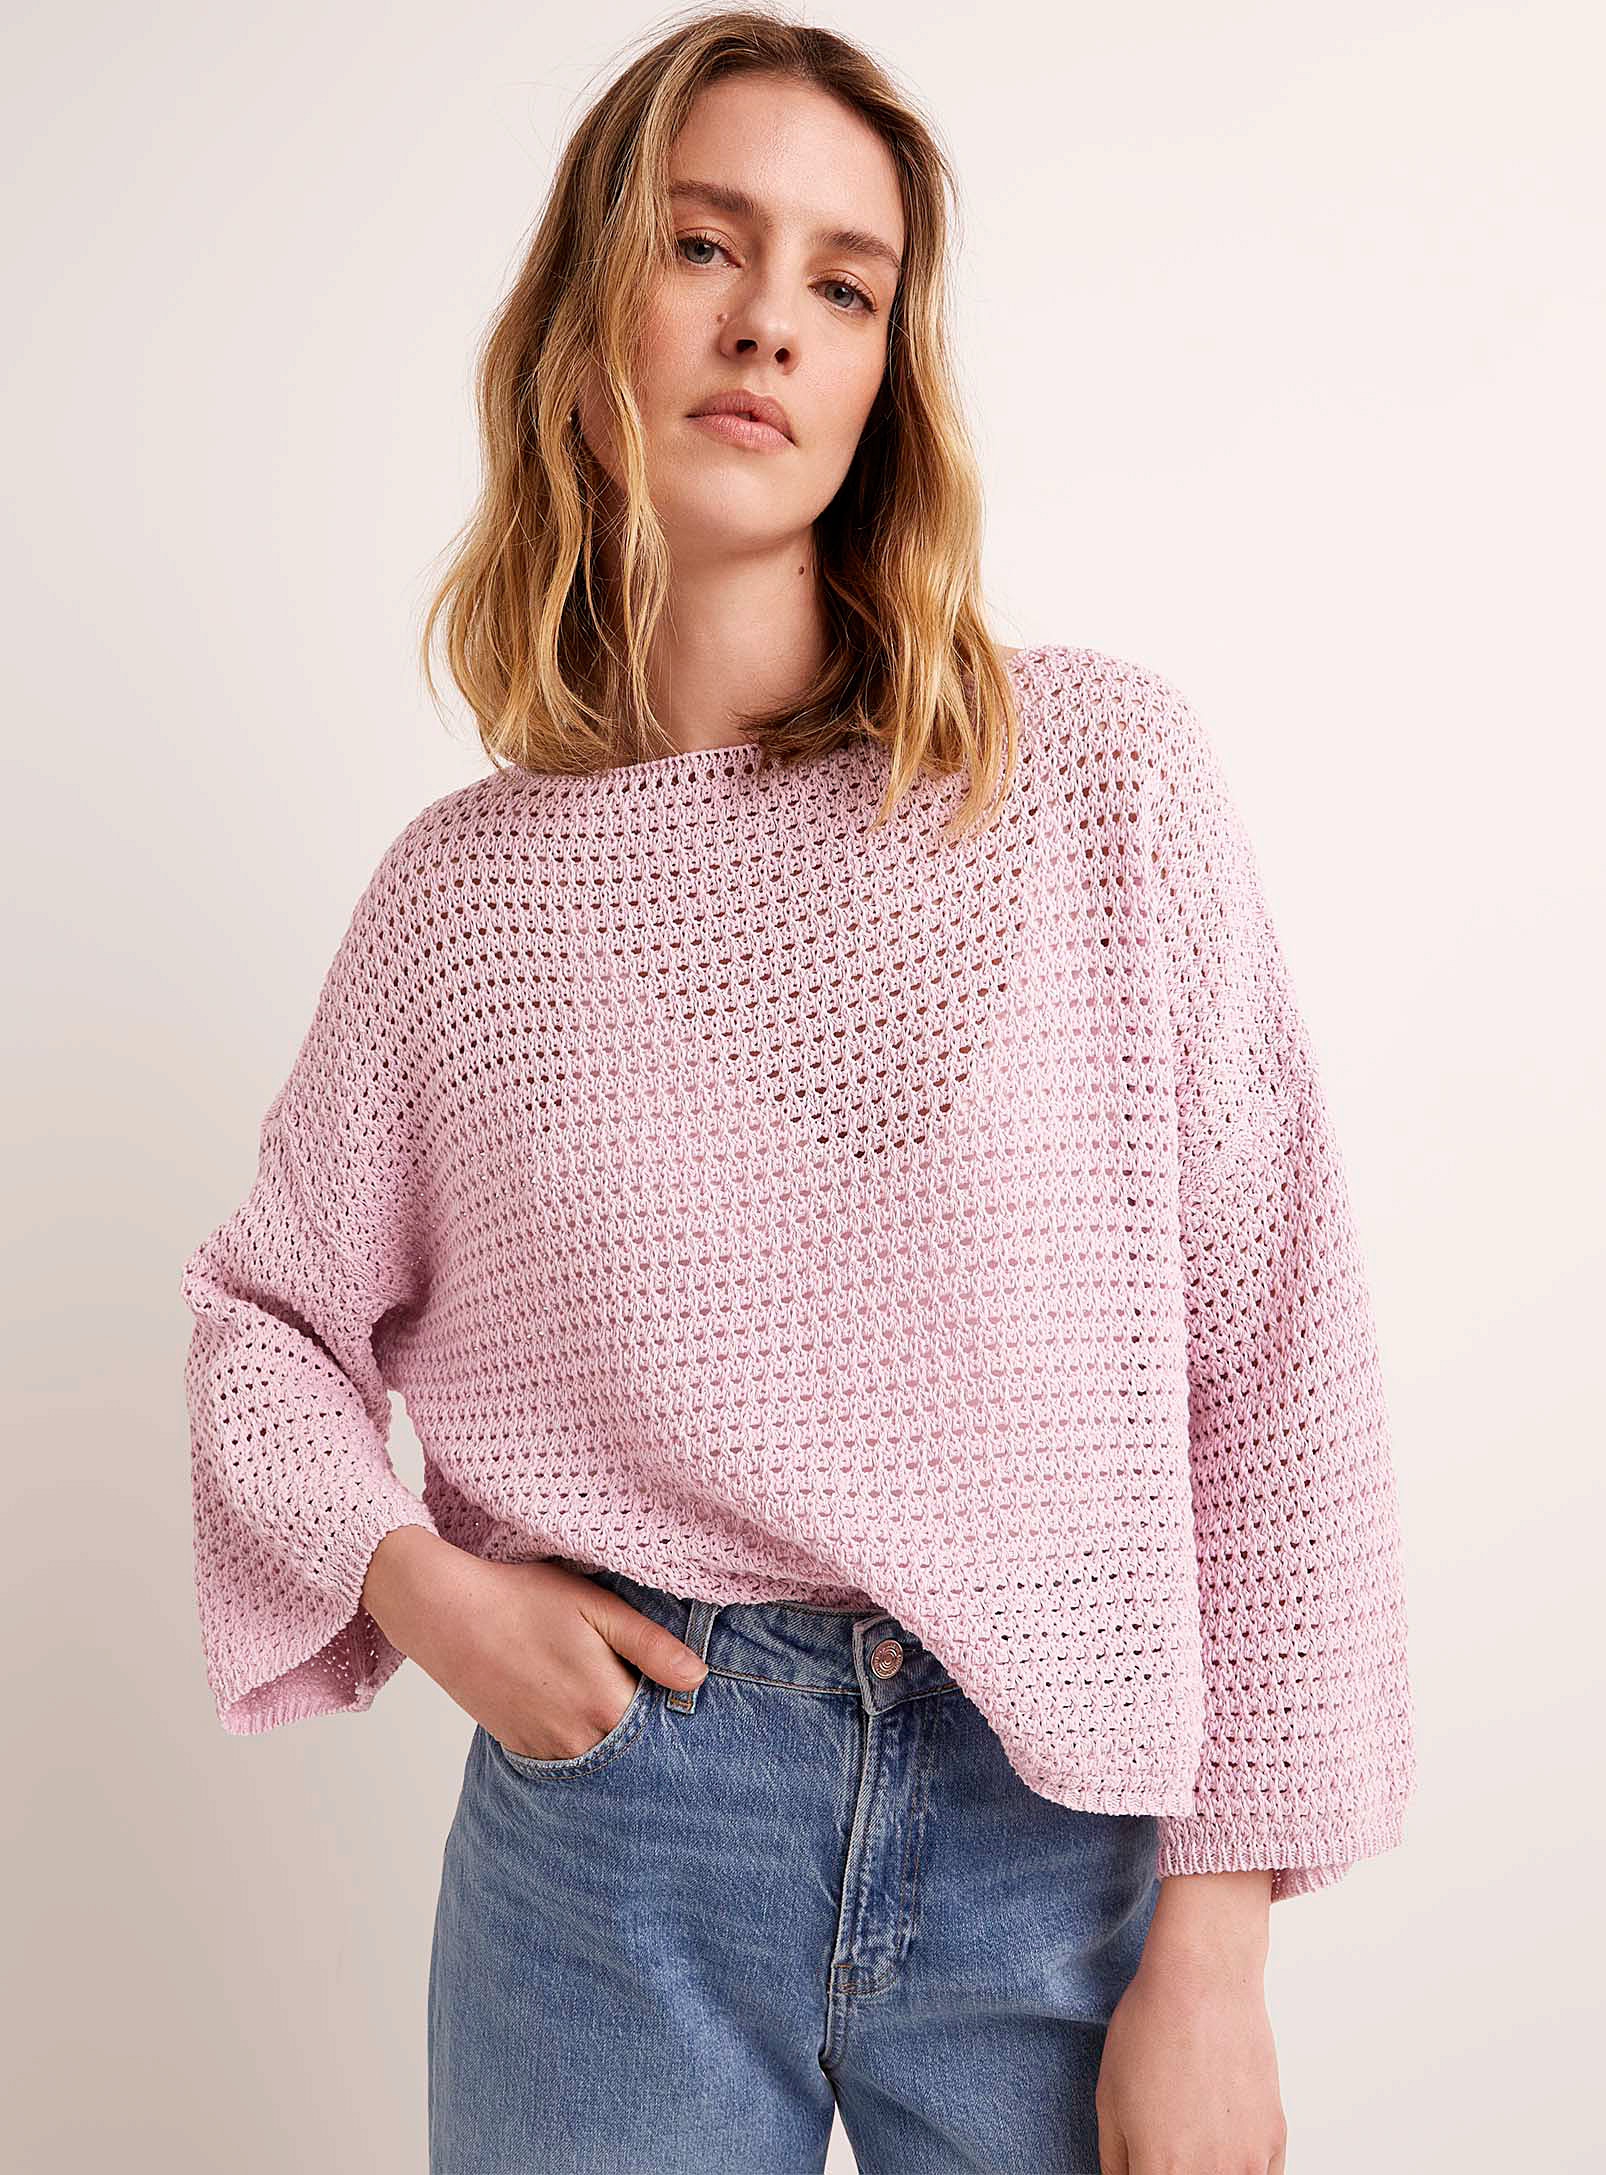 Contemporaine Openwork Crochet Loose Sweater In Pink